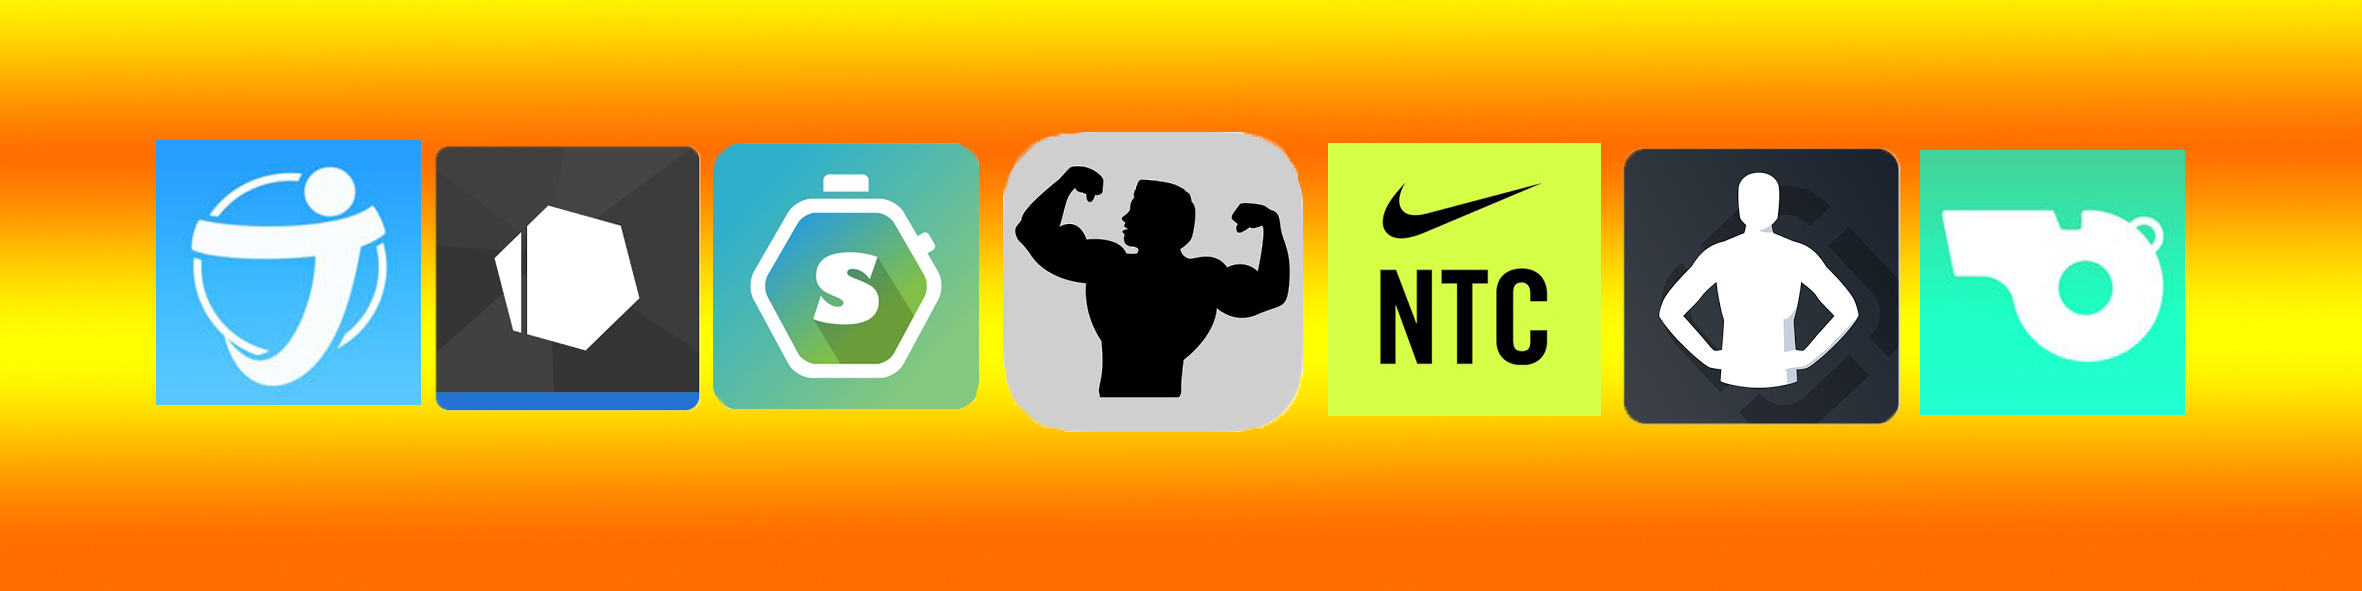 Топ лучших фитнес-приложений для iOS | Обзор приложений для фитнеса от  Роскачества